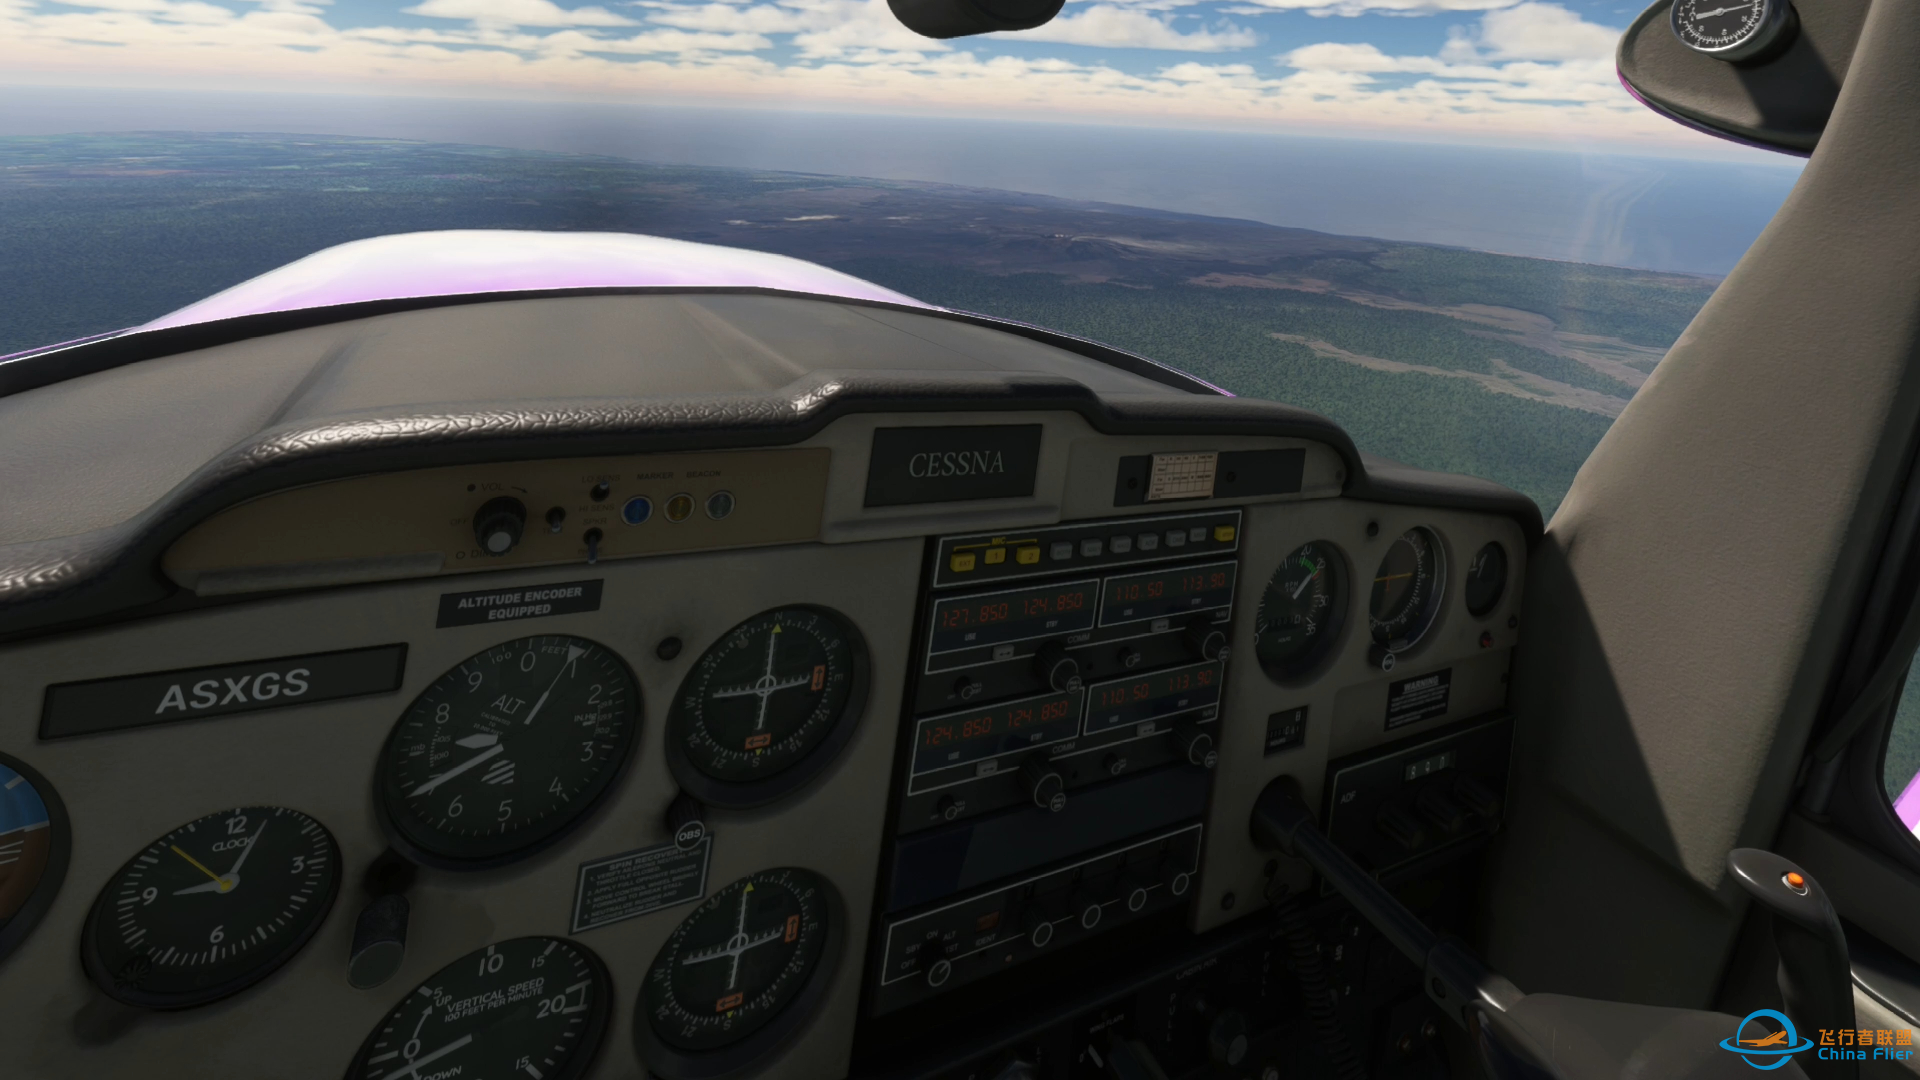 微软模拟飞行 602 VR 夏威夷阿罗哈航空 郊野之行-1146 